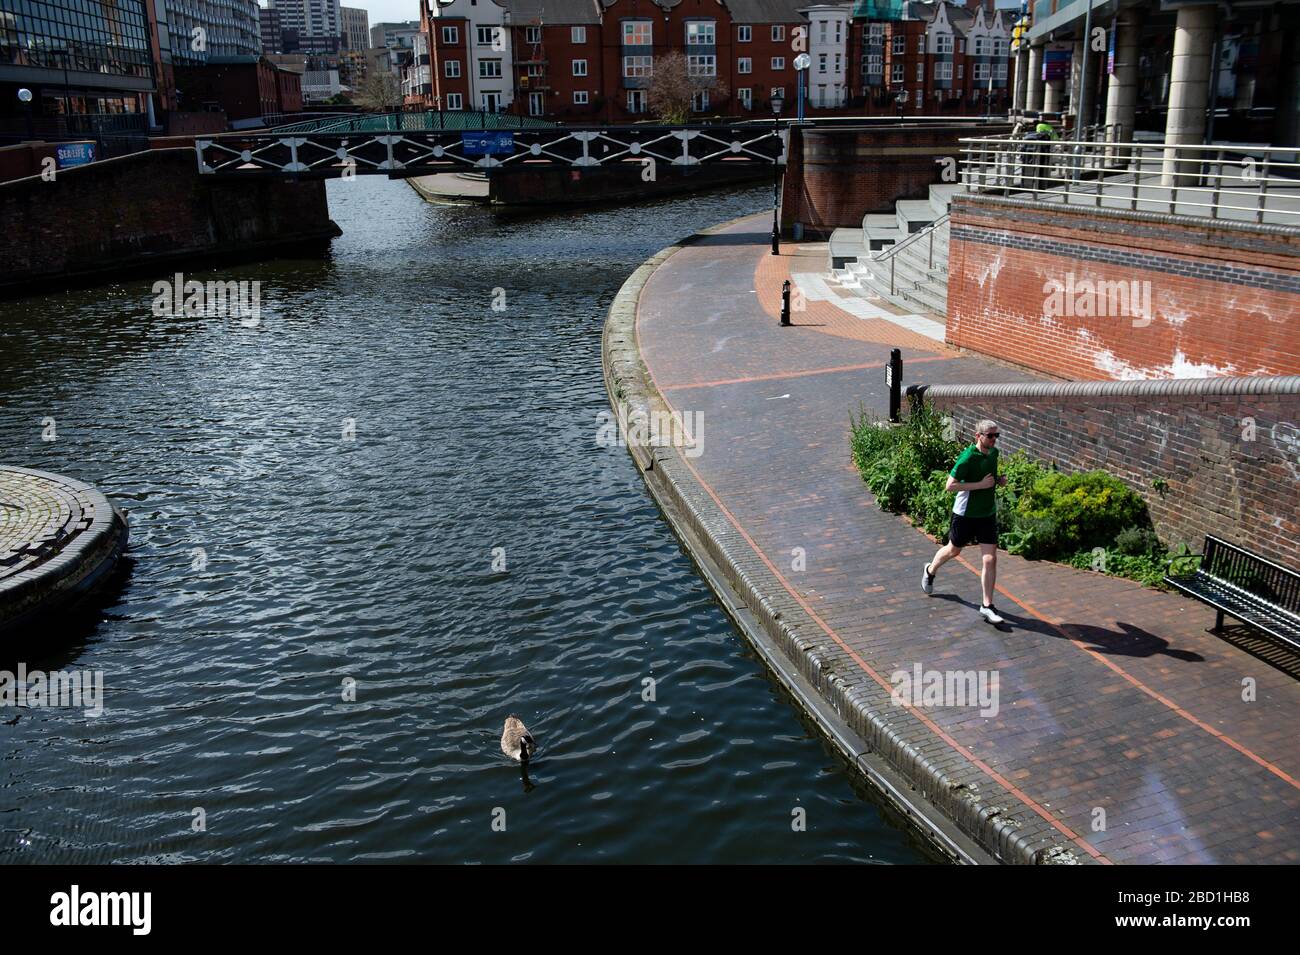 Un homme exerce par un canal dans le centre-ville de Birmingham comme le Canal and River Trust a commencé à mettre en place des panneaux avertissant les gens de limiter l'utilisation des chemins de remorquage de canal et ont eu égard à la distanciation sociale. Banque D'Images